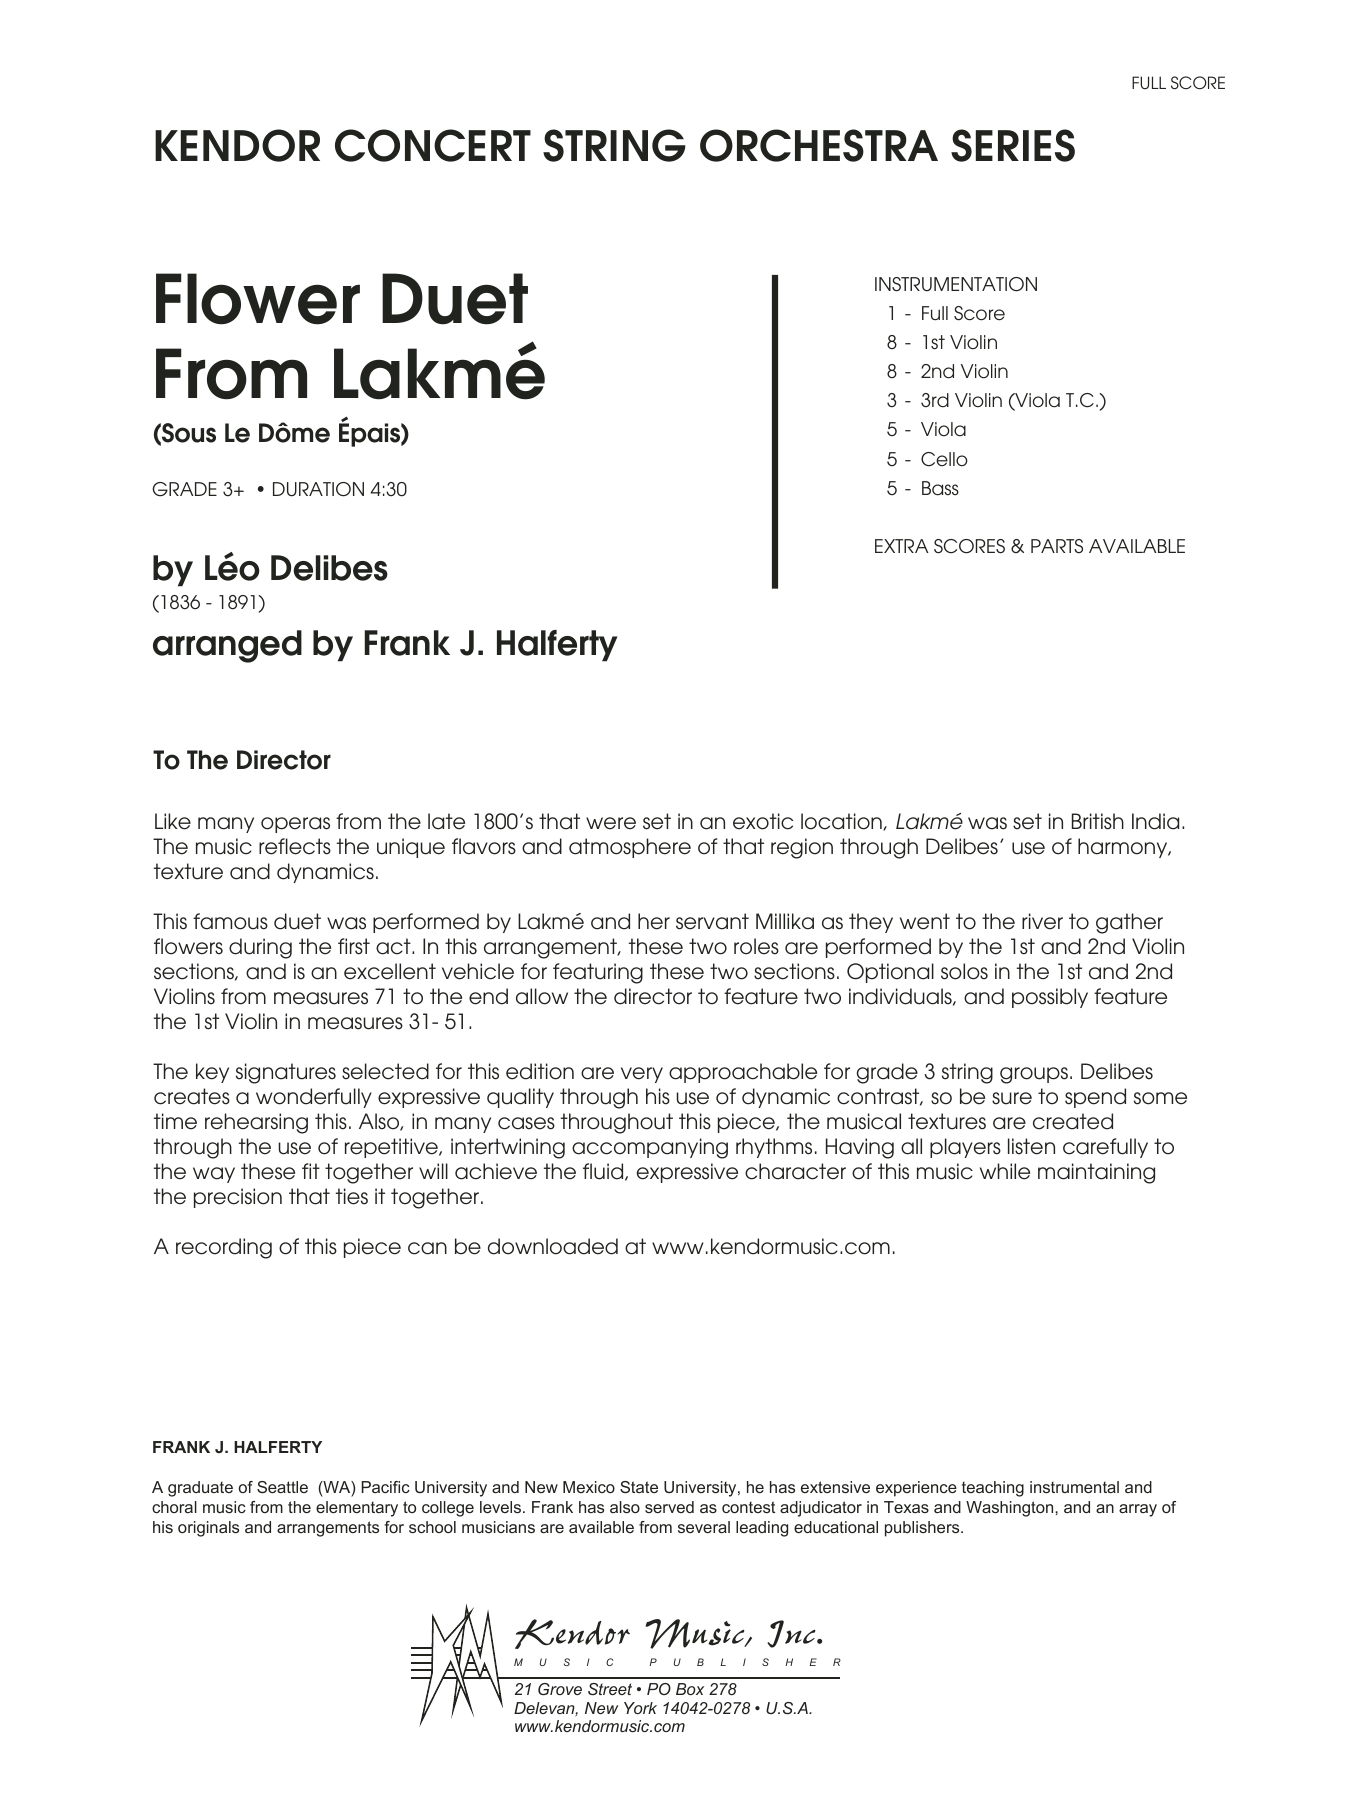 Flower Duet From Lakme (Sous Le Dome Epais) - Full Score (Orchestra) von Frank J. Halferty